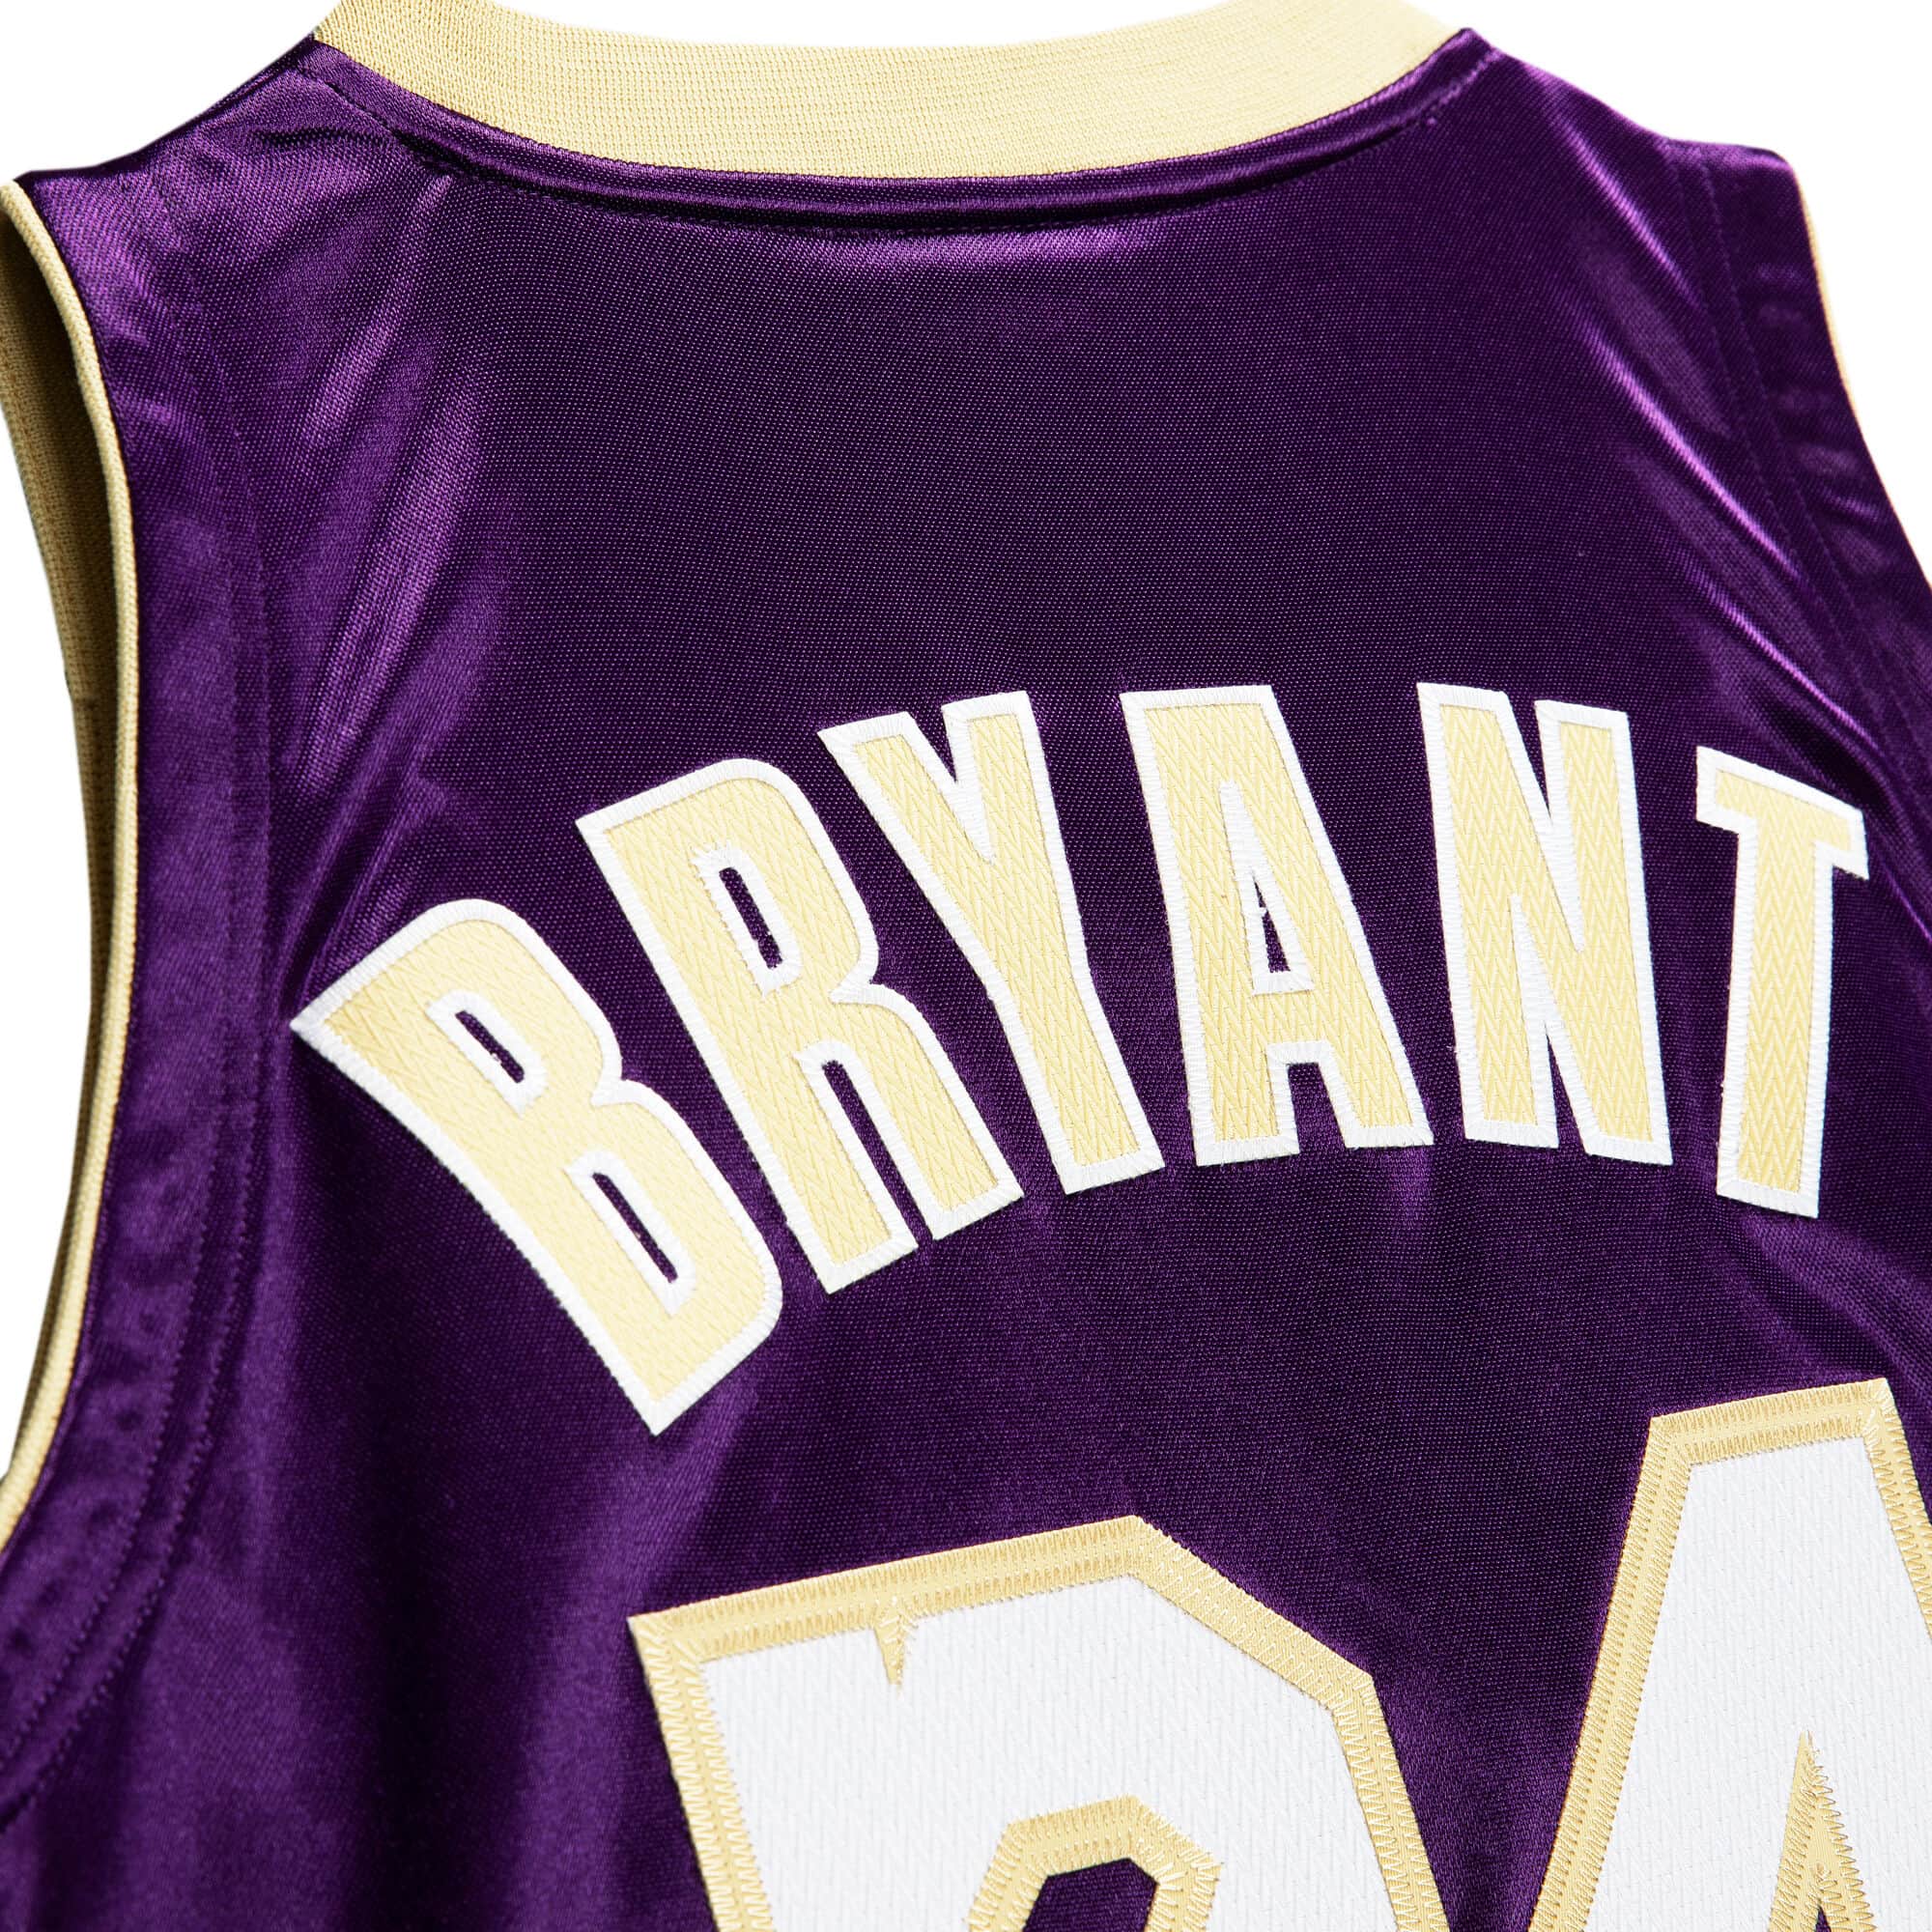 Other, Kobe Bryant Black Mamba 24 Lakers Yellow Purple Jersey L